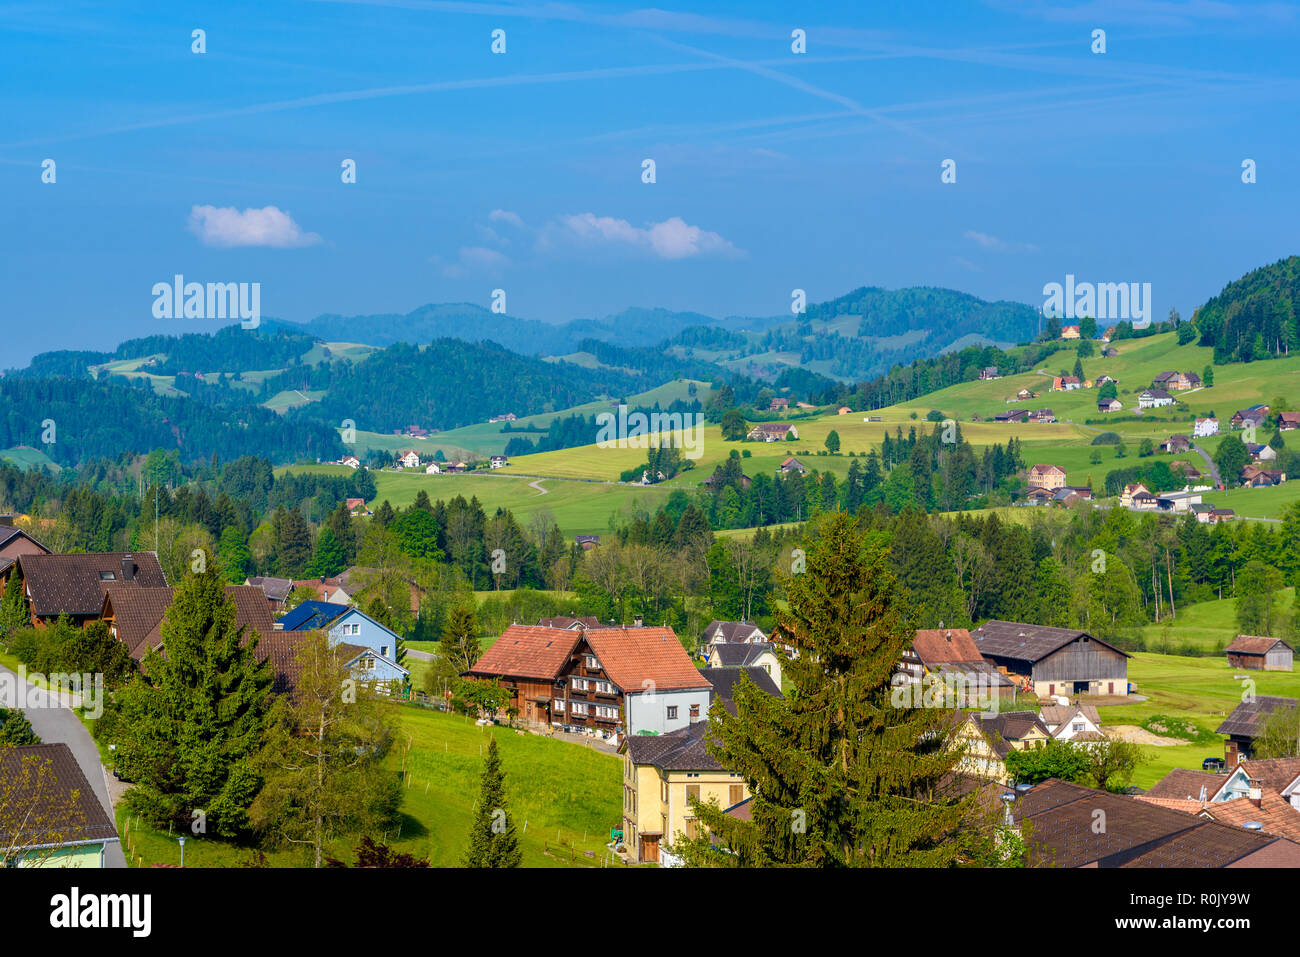 Village Schoenengrund, Hinterland Appenzell Ausserrhoden Switzerland Stock Photo